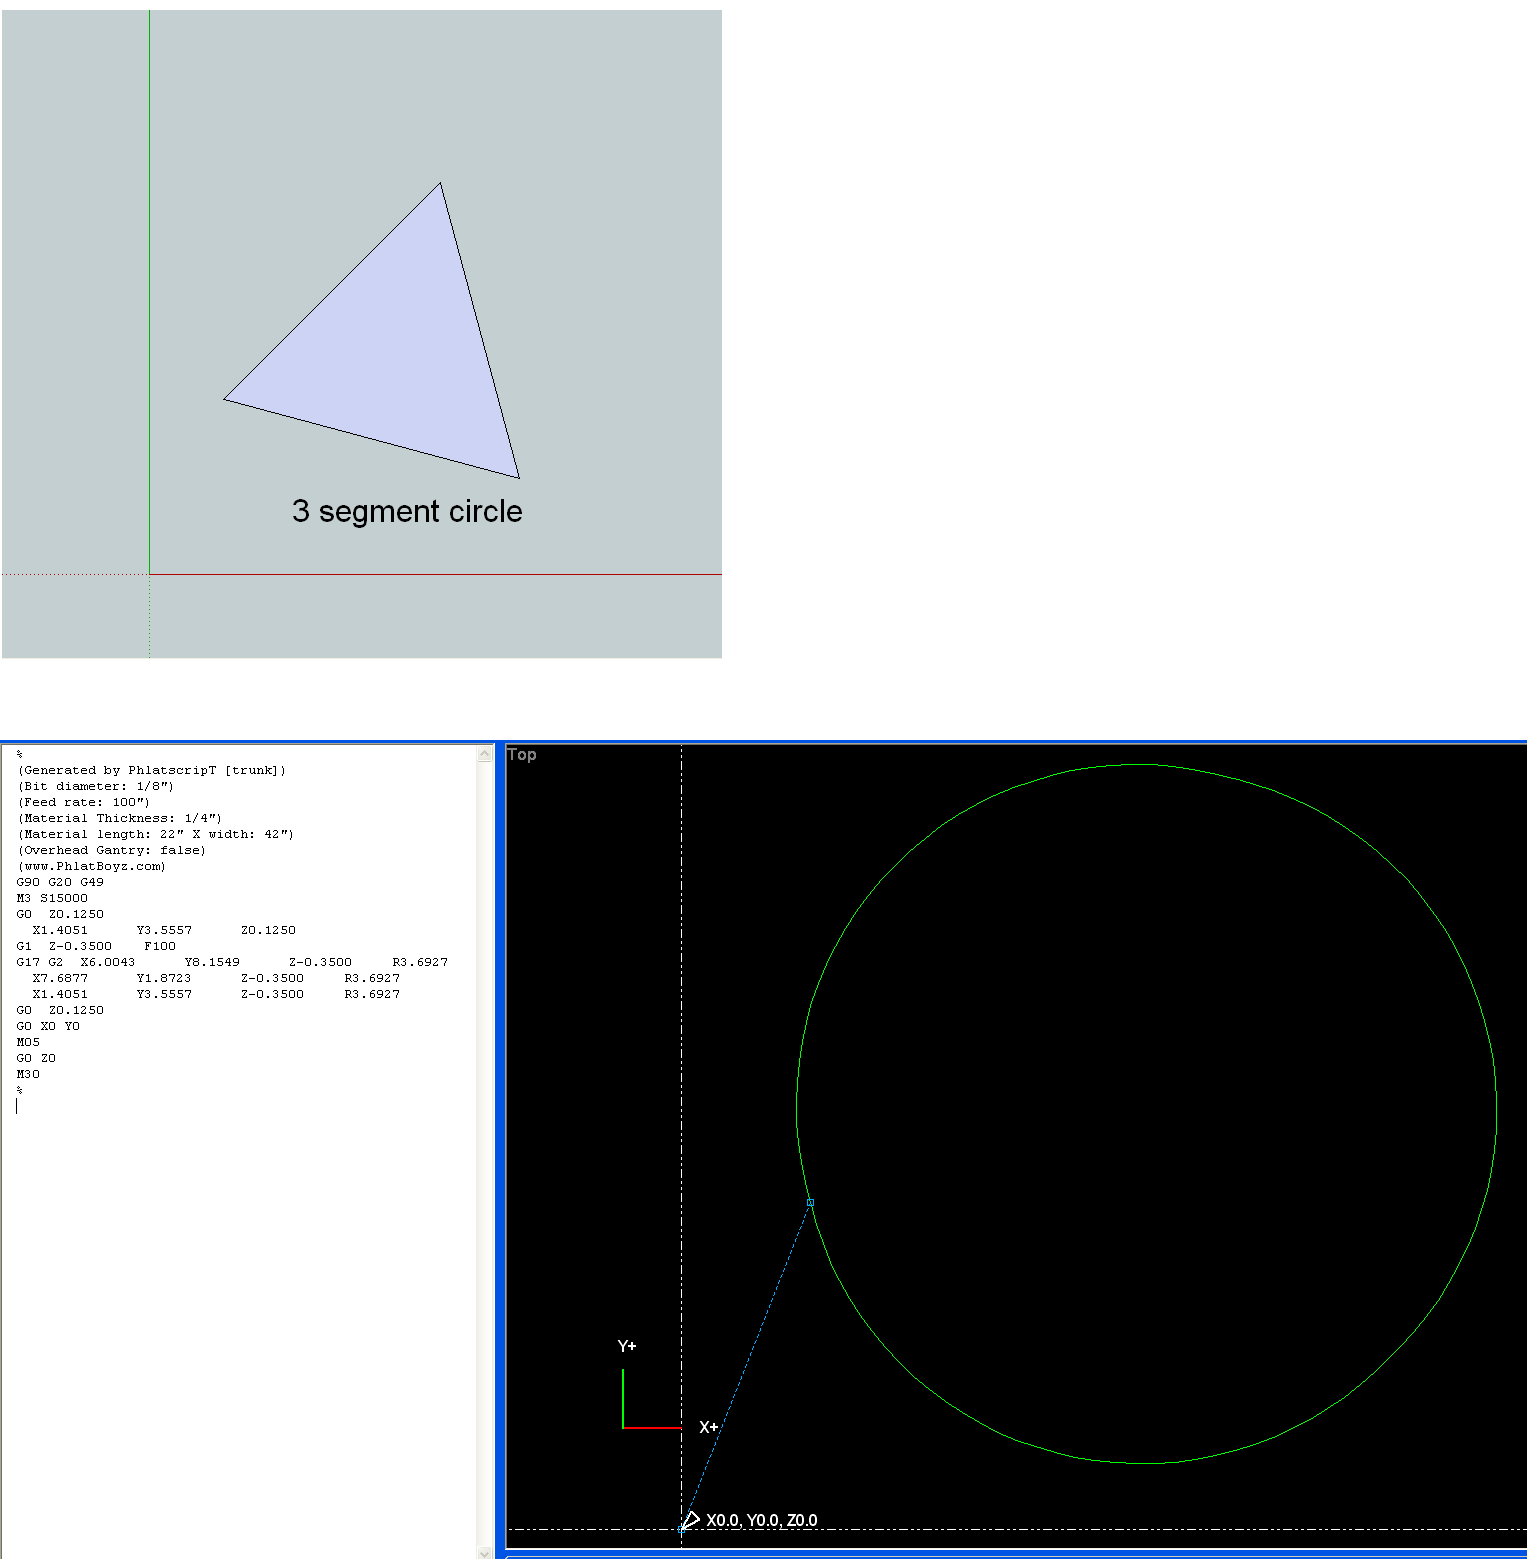 3 segment circle and simulated gcode